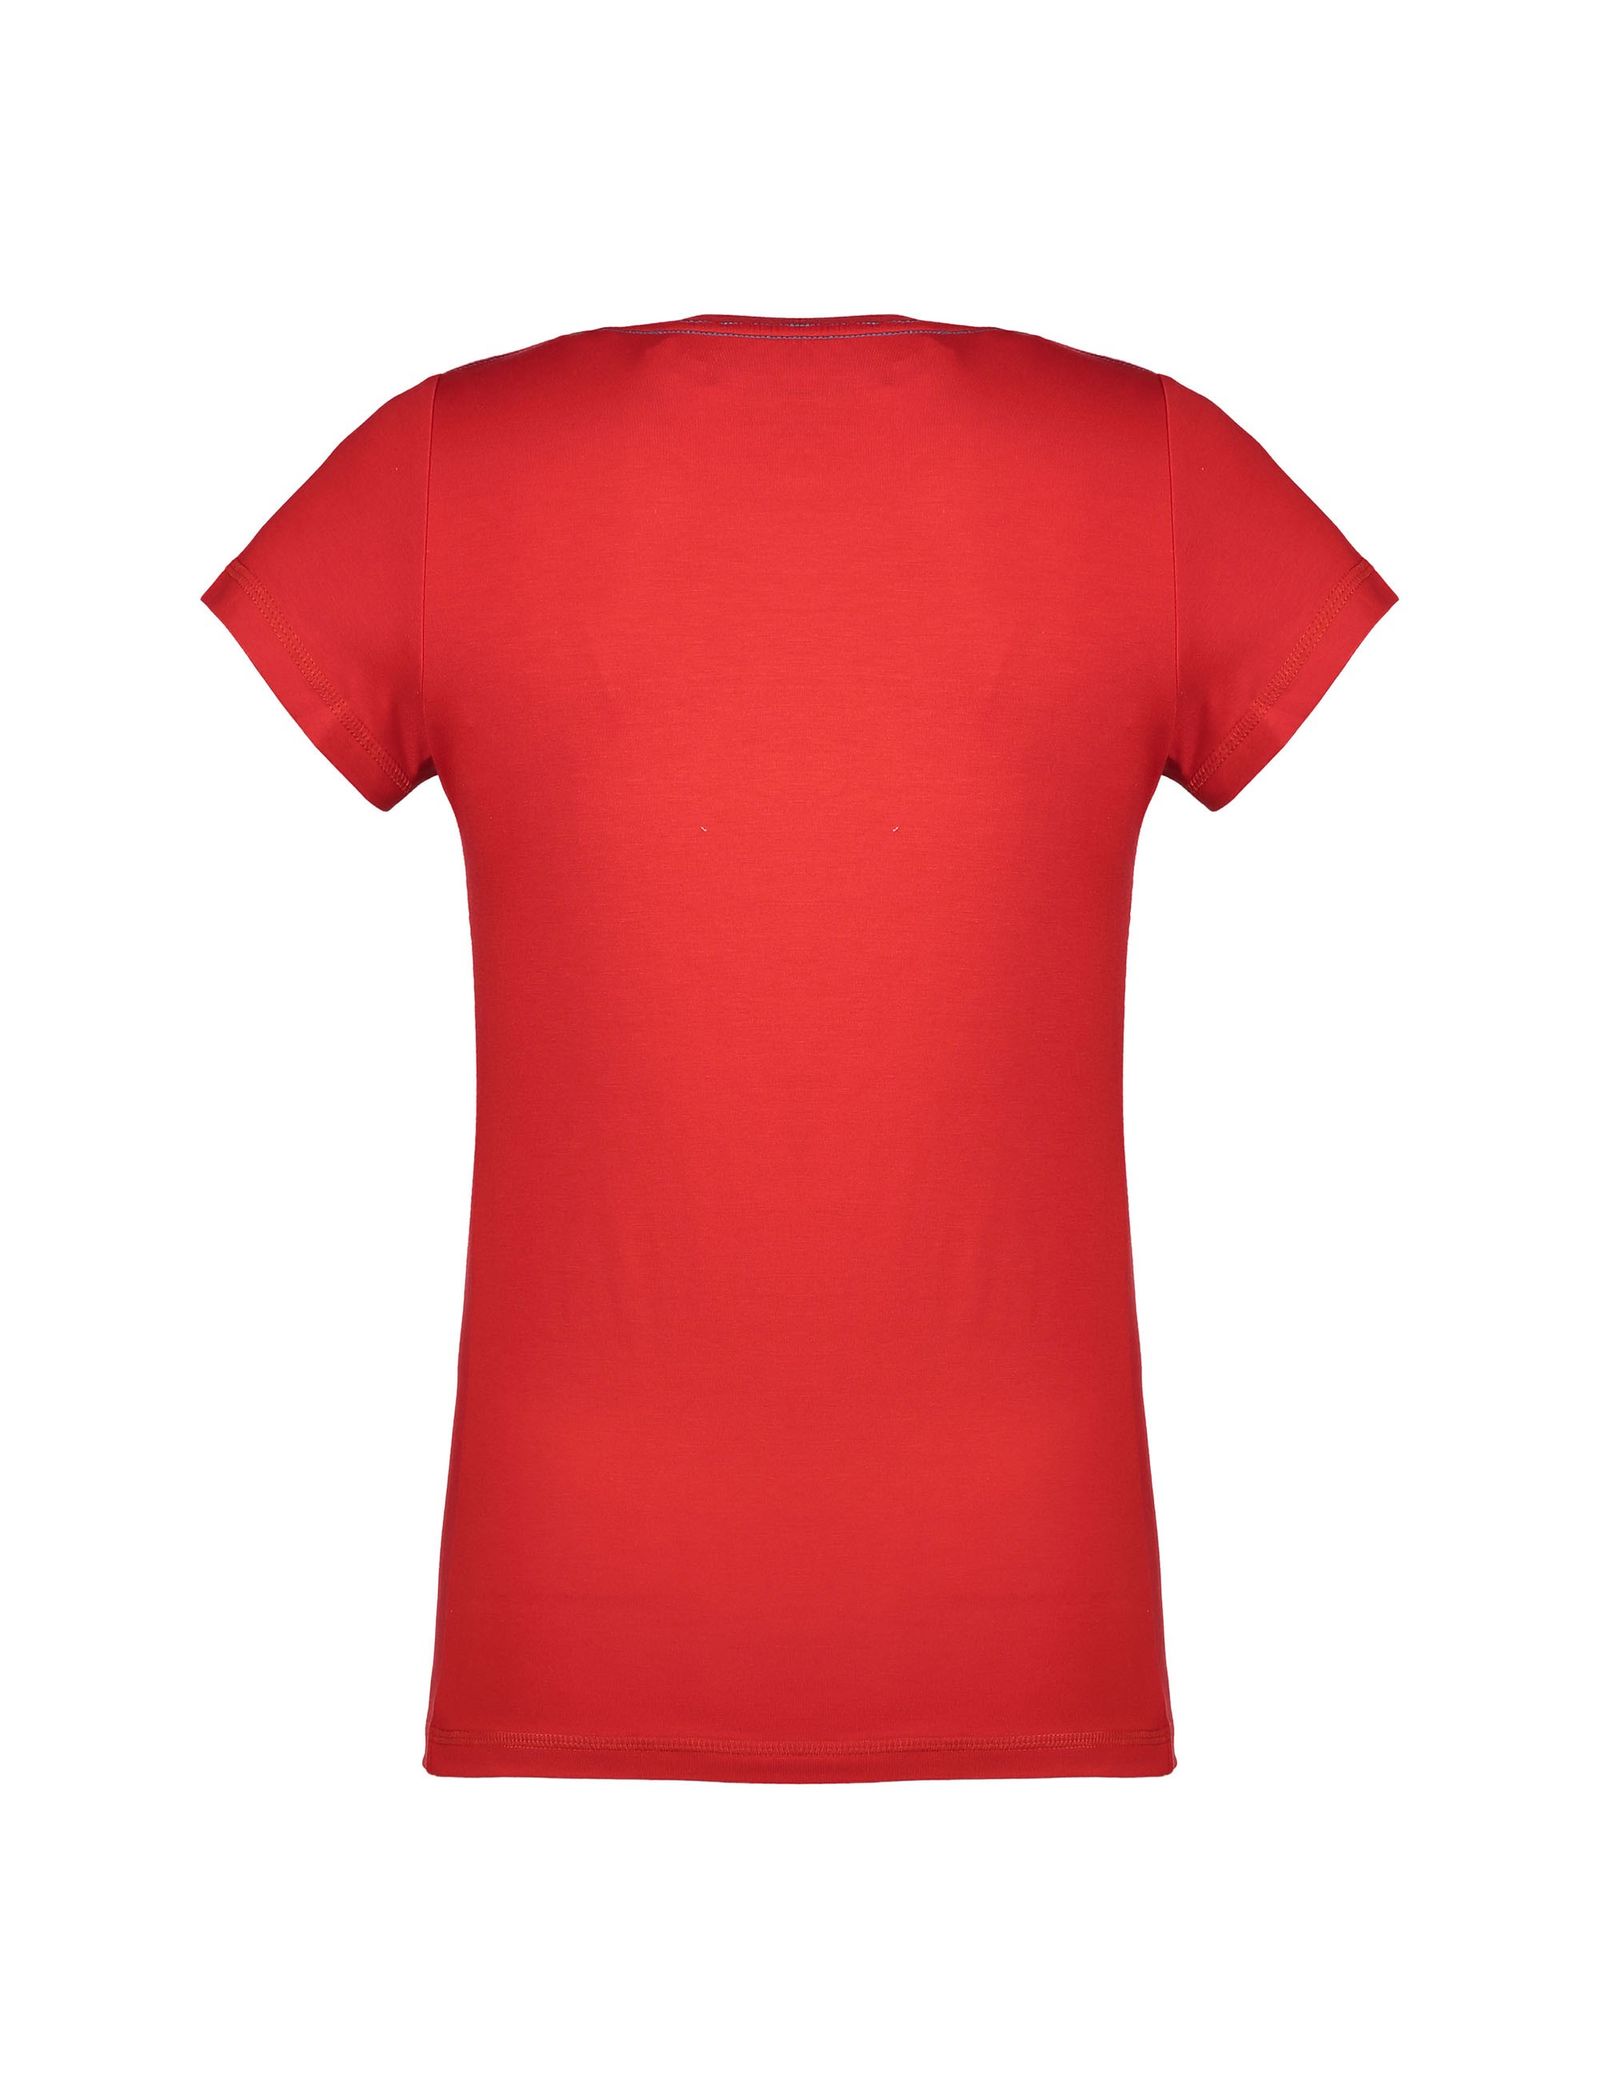 تی شرت و شلوار راحتی ویسکوز زنانه - ناربن - قرمز و آبي - 4